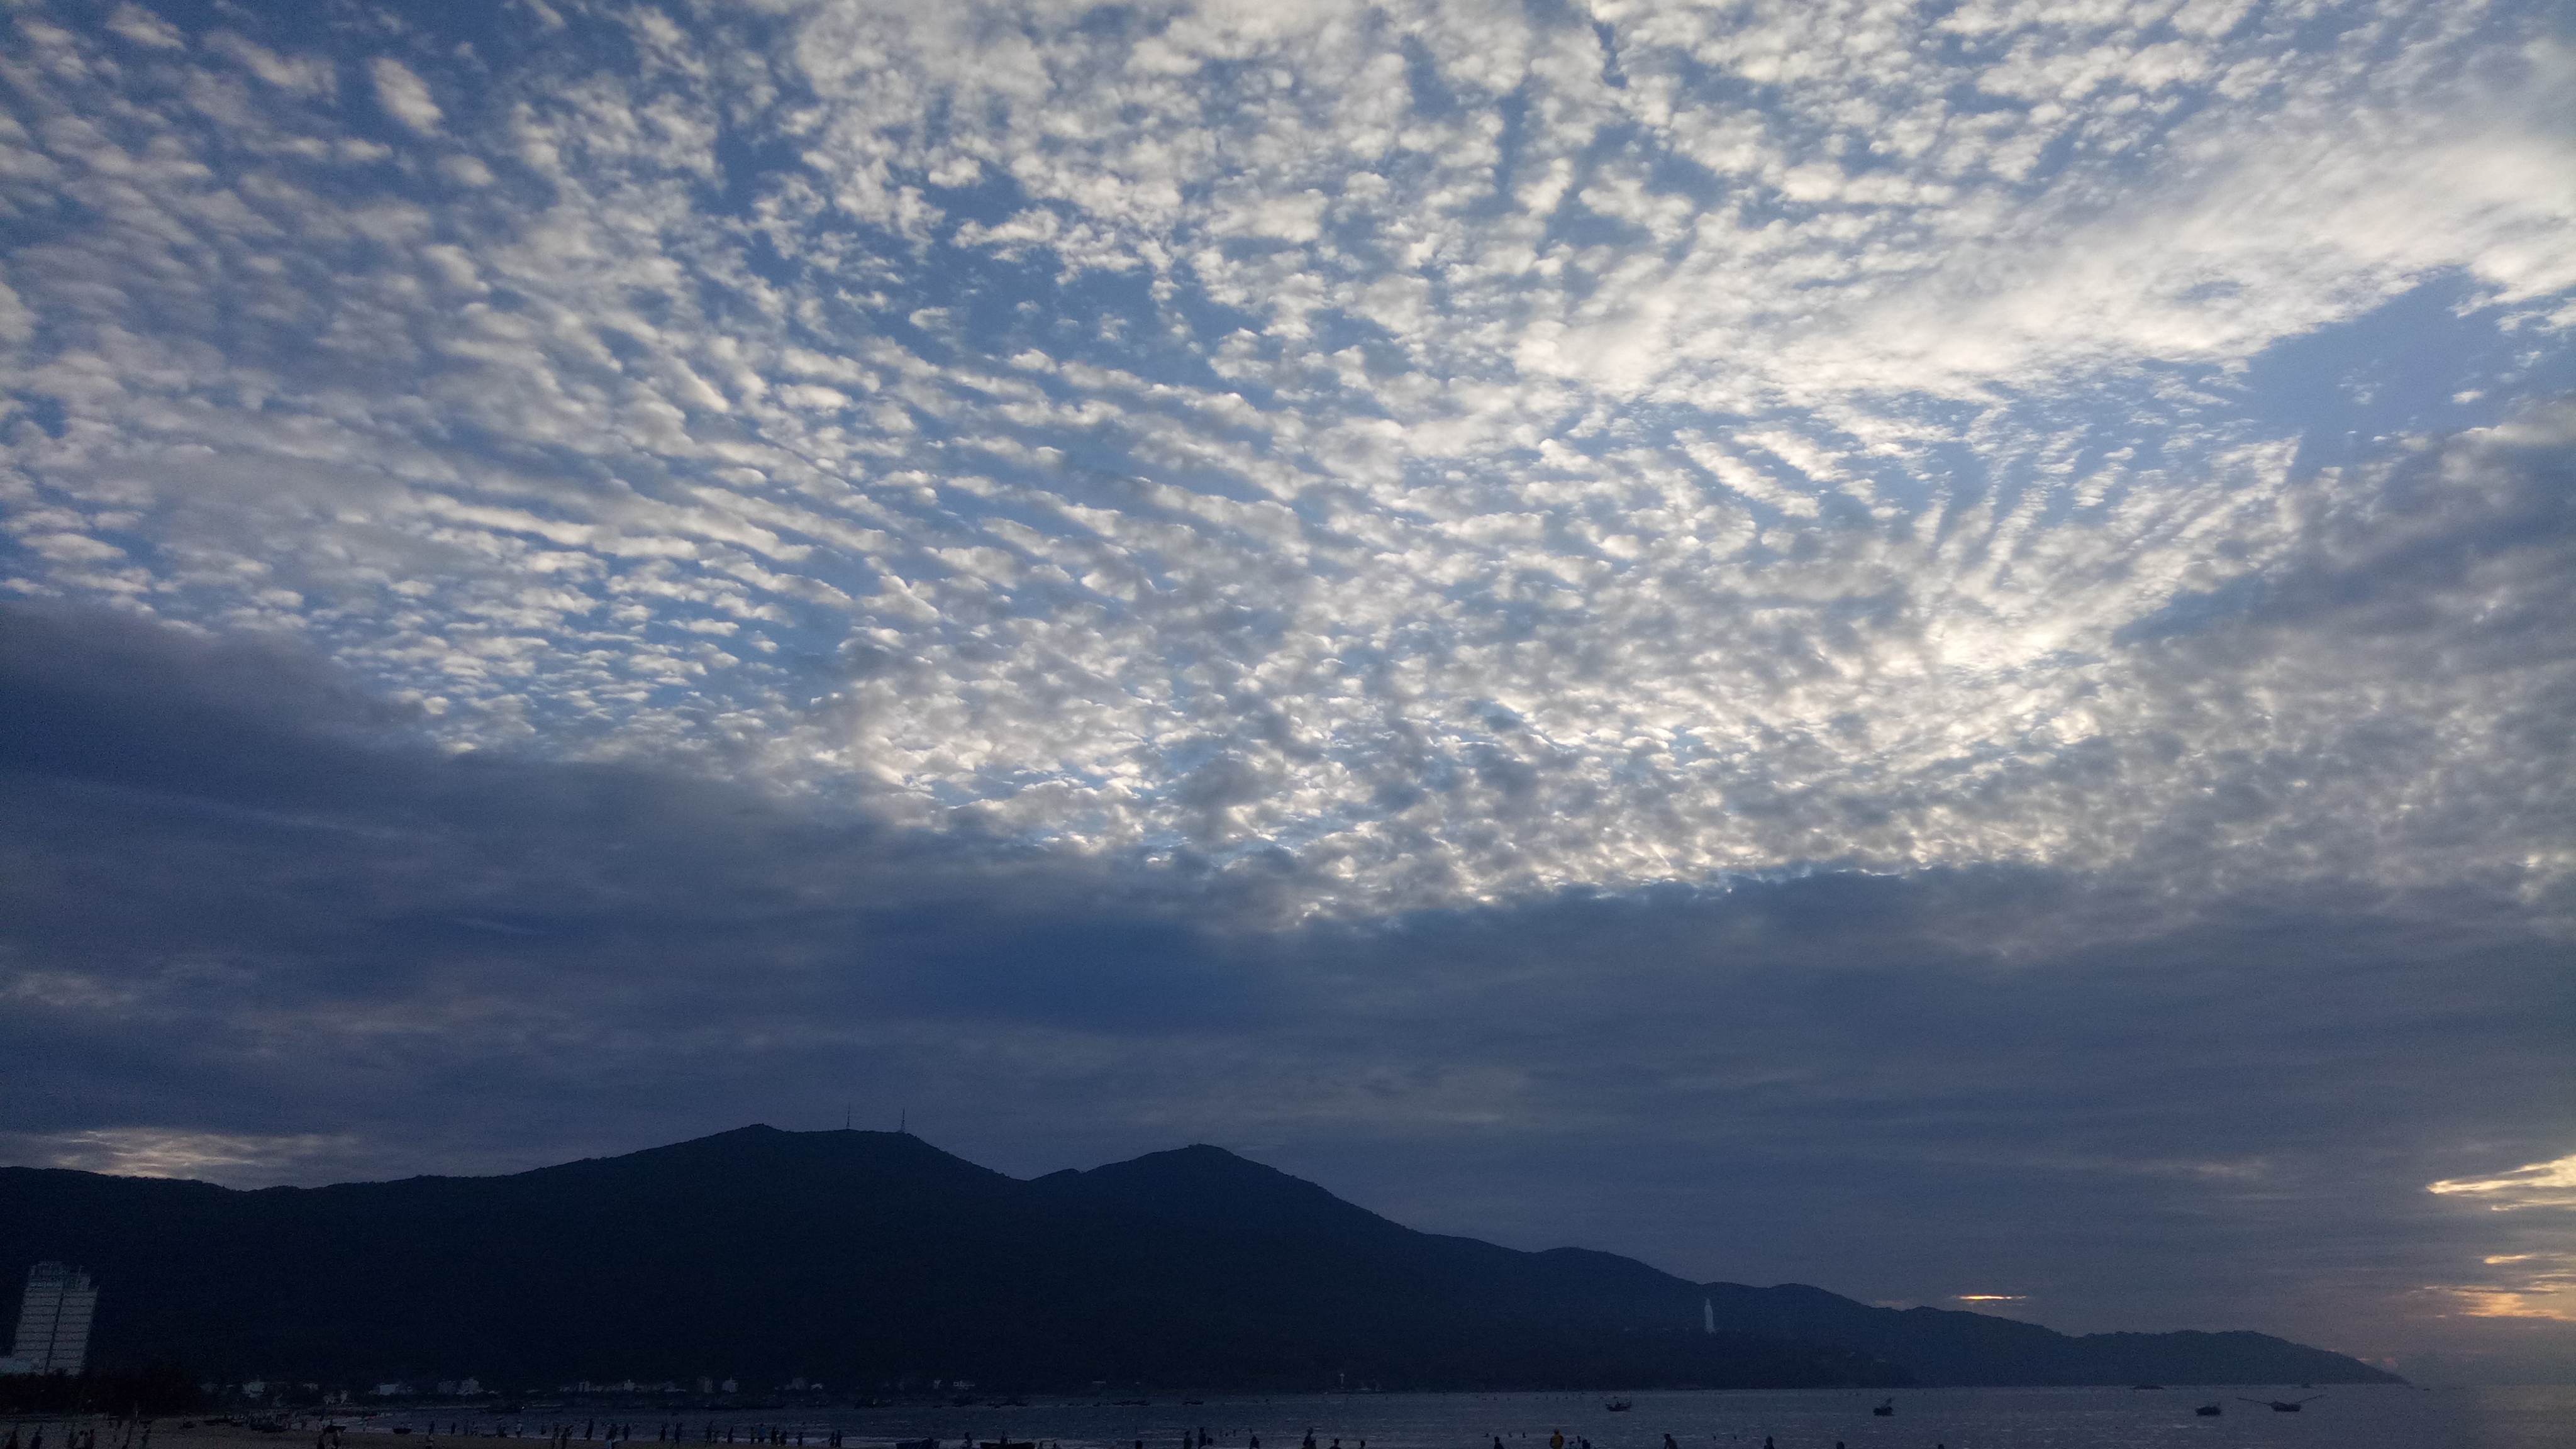 Mây Vảy cá Buổi sáng bình yên trên biển